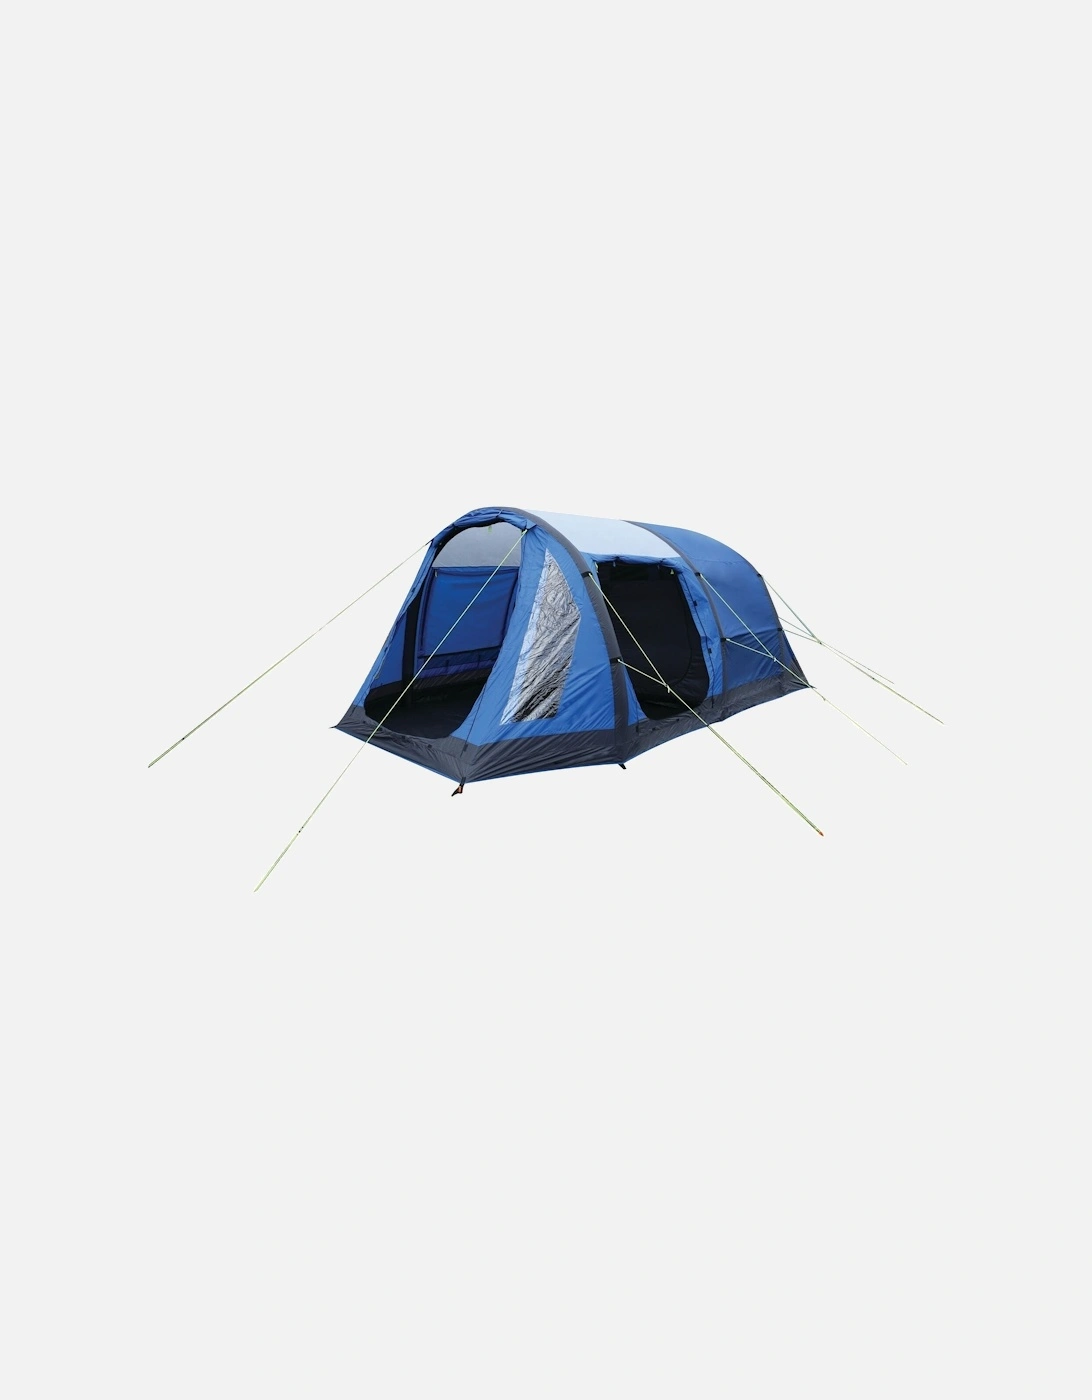 Kolima 5-Man Inflatable Family Tent - Laser/Ebony - One Size, 8 of 7